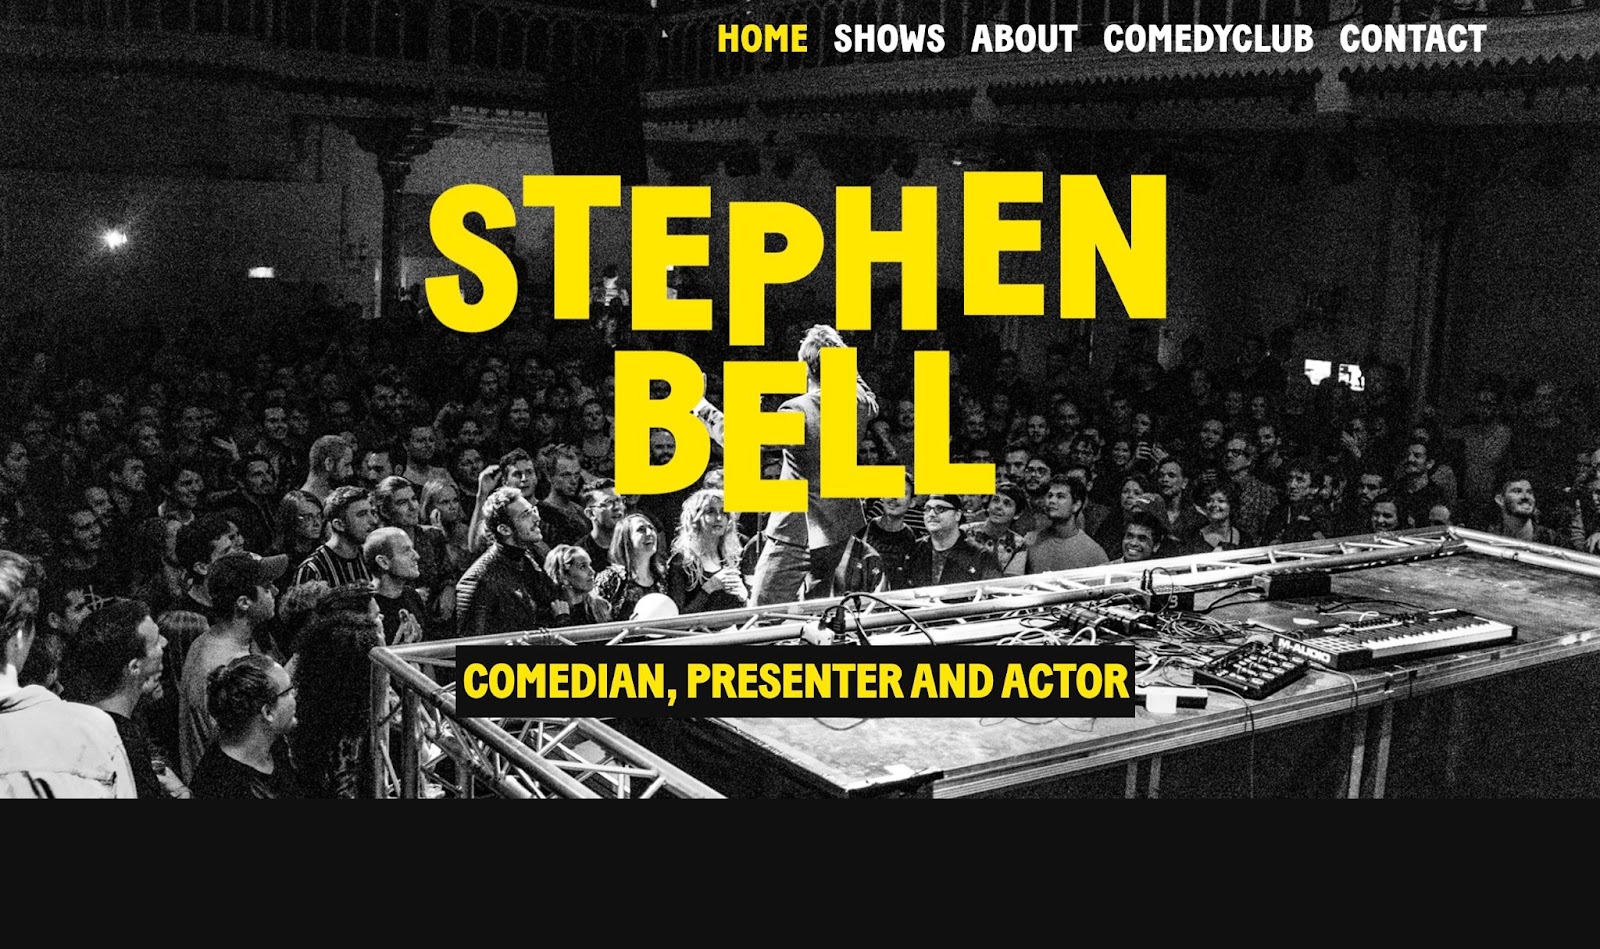 一群喜劇演員正在聽喜劇演員斯蒂芬貝爾的鏡頭。圖片上方是粗體黃色文字，上面寫著“STEPHEN BELL”，下面是“COMEDIAN、PRESENTER AND ACTOR”。